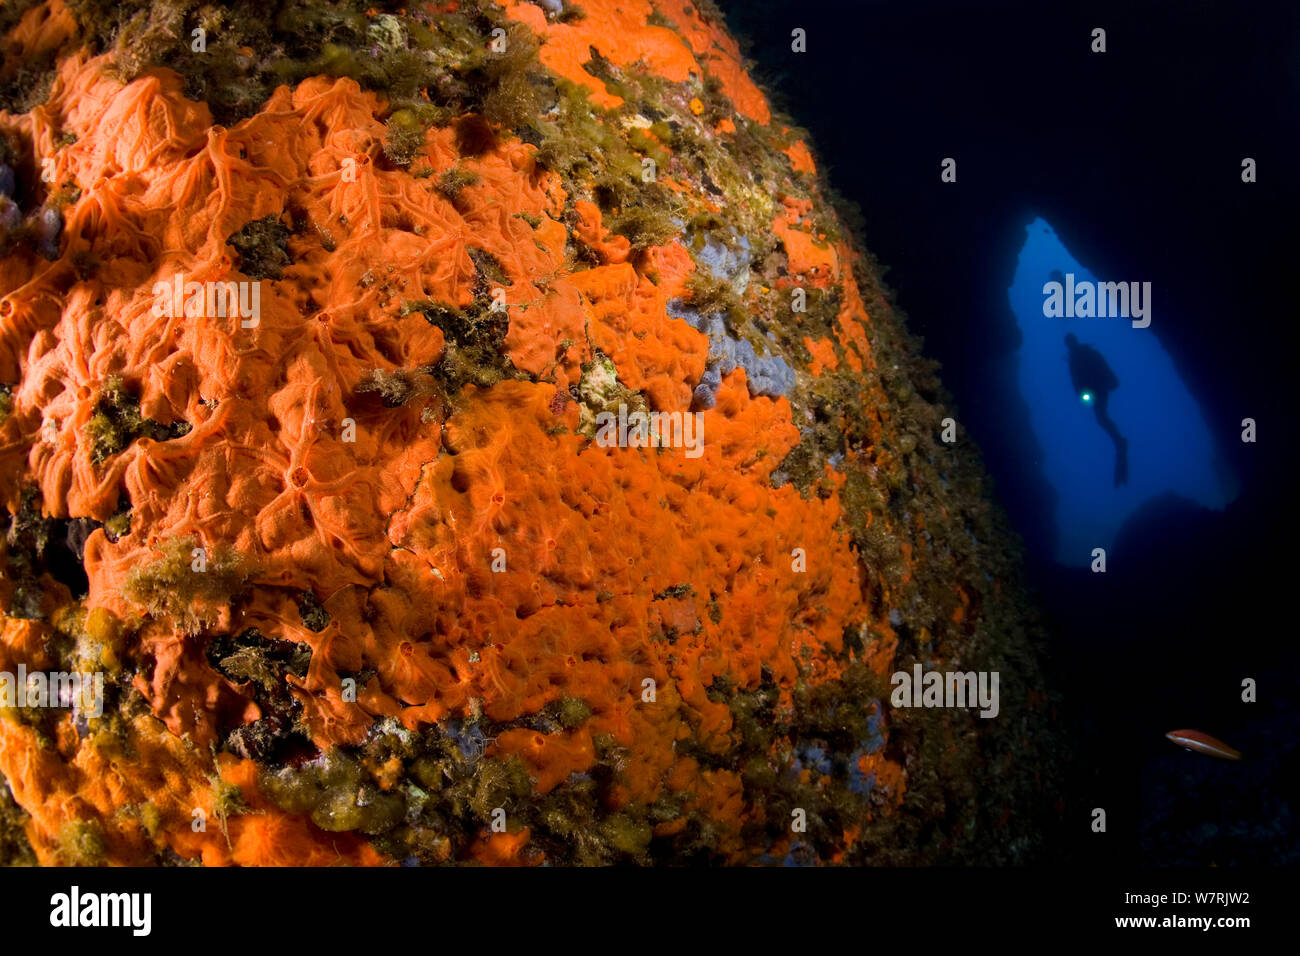 Couverte de roches rouges encroûtantes (Spirastrella cunctatrix éponge) et cave avec PADI, l'île de Ponza, Italie, Méditerranée, Mer Tyrrhénienne Banque D'Images